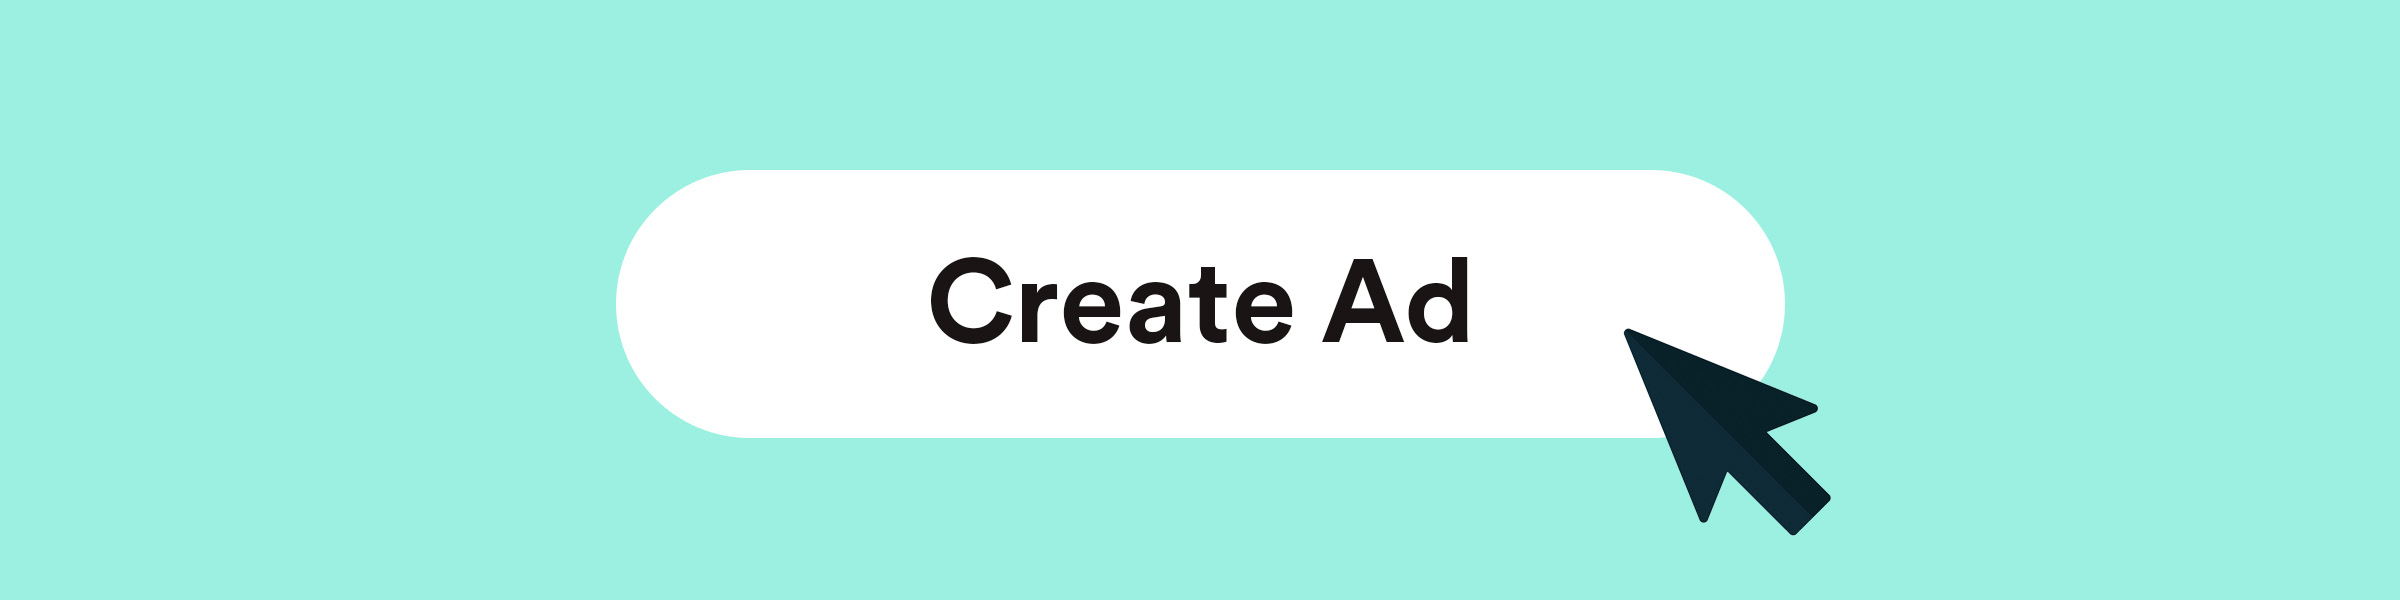 Create Ad Image